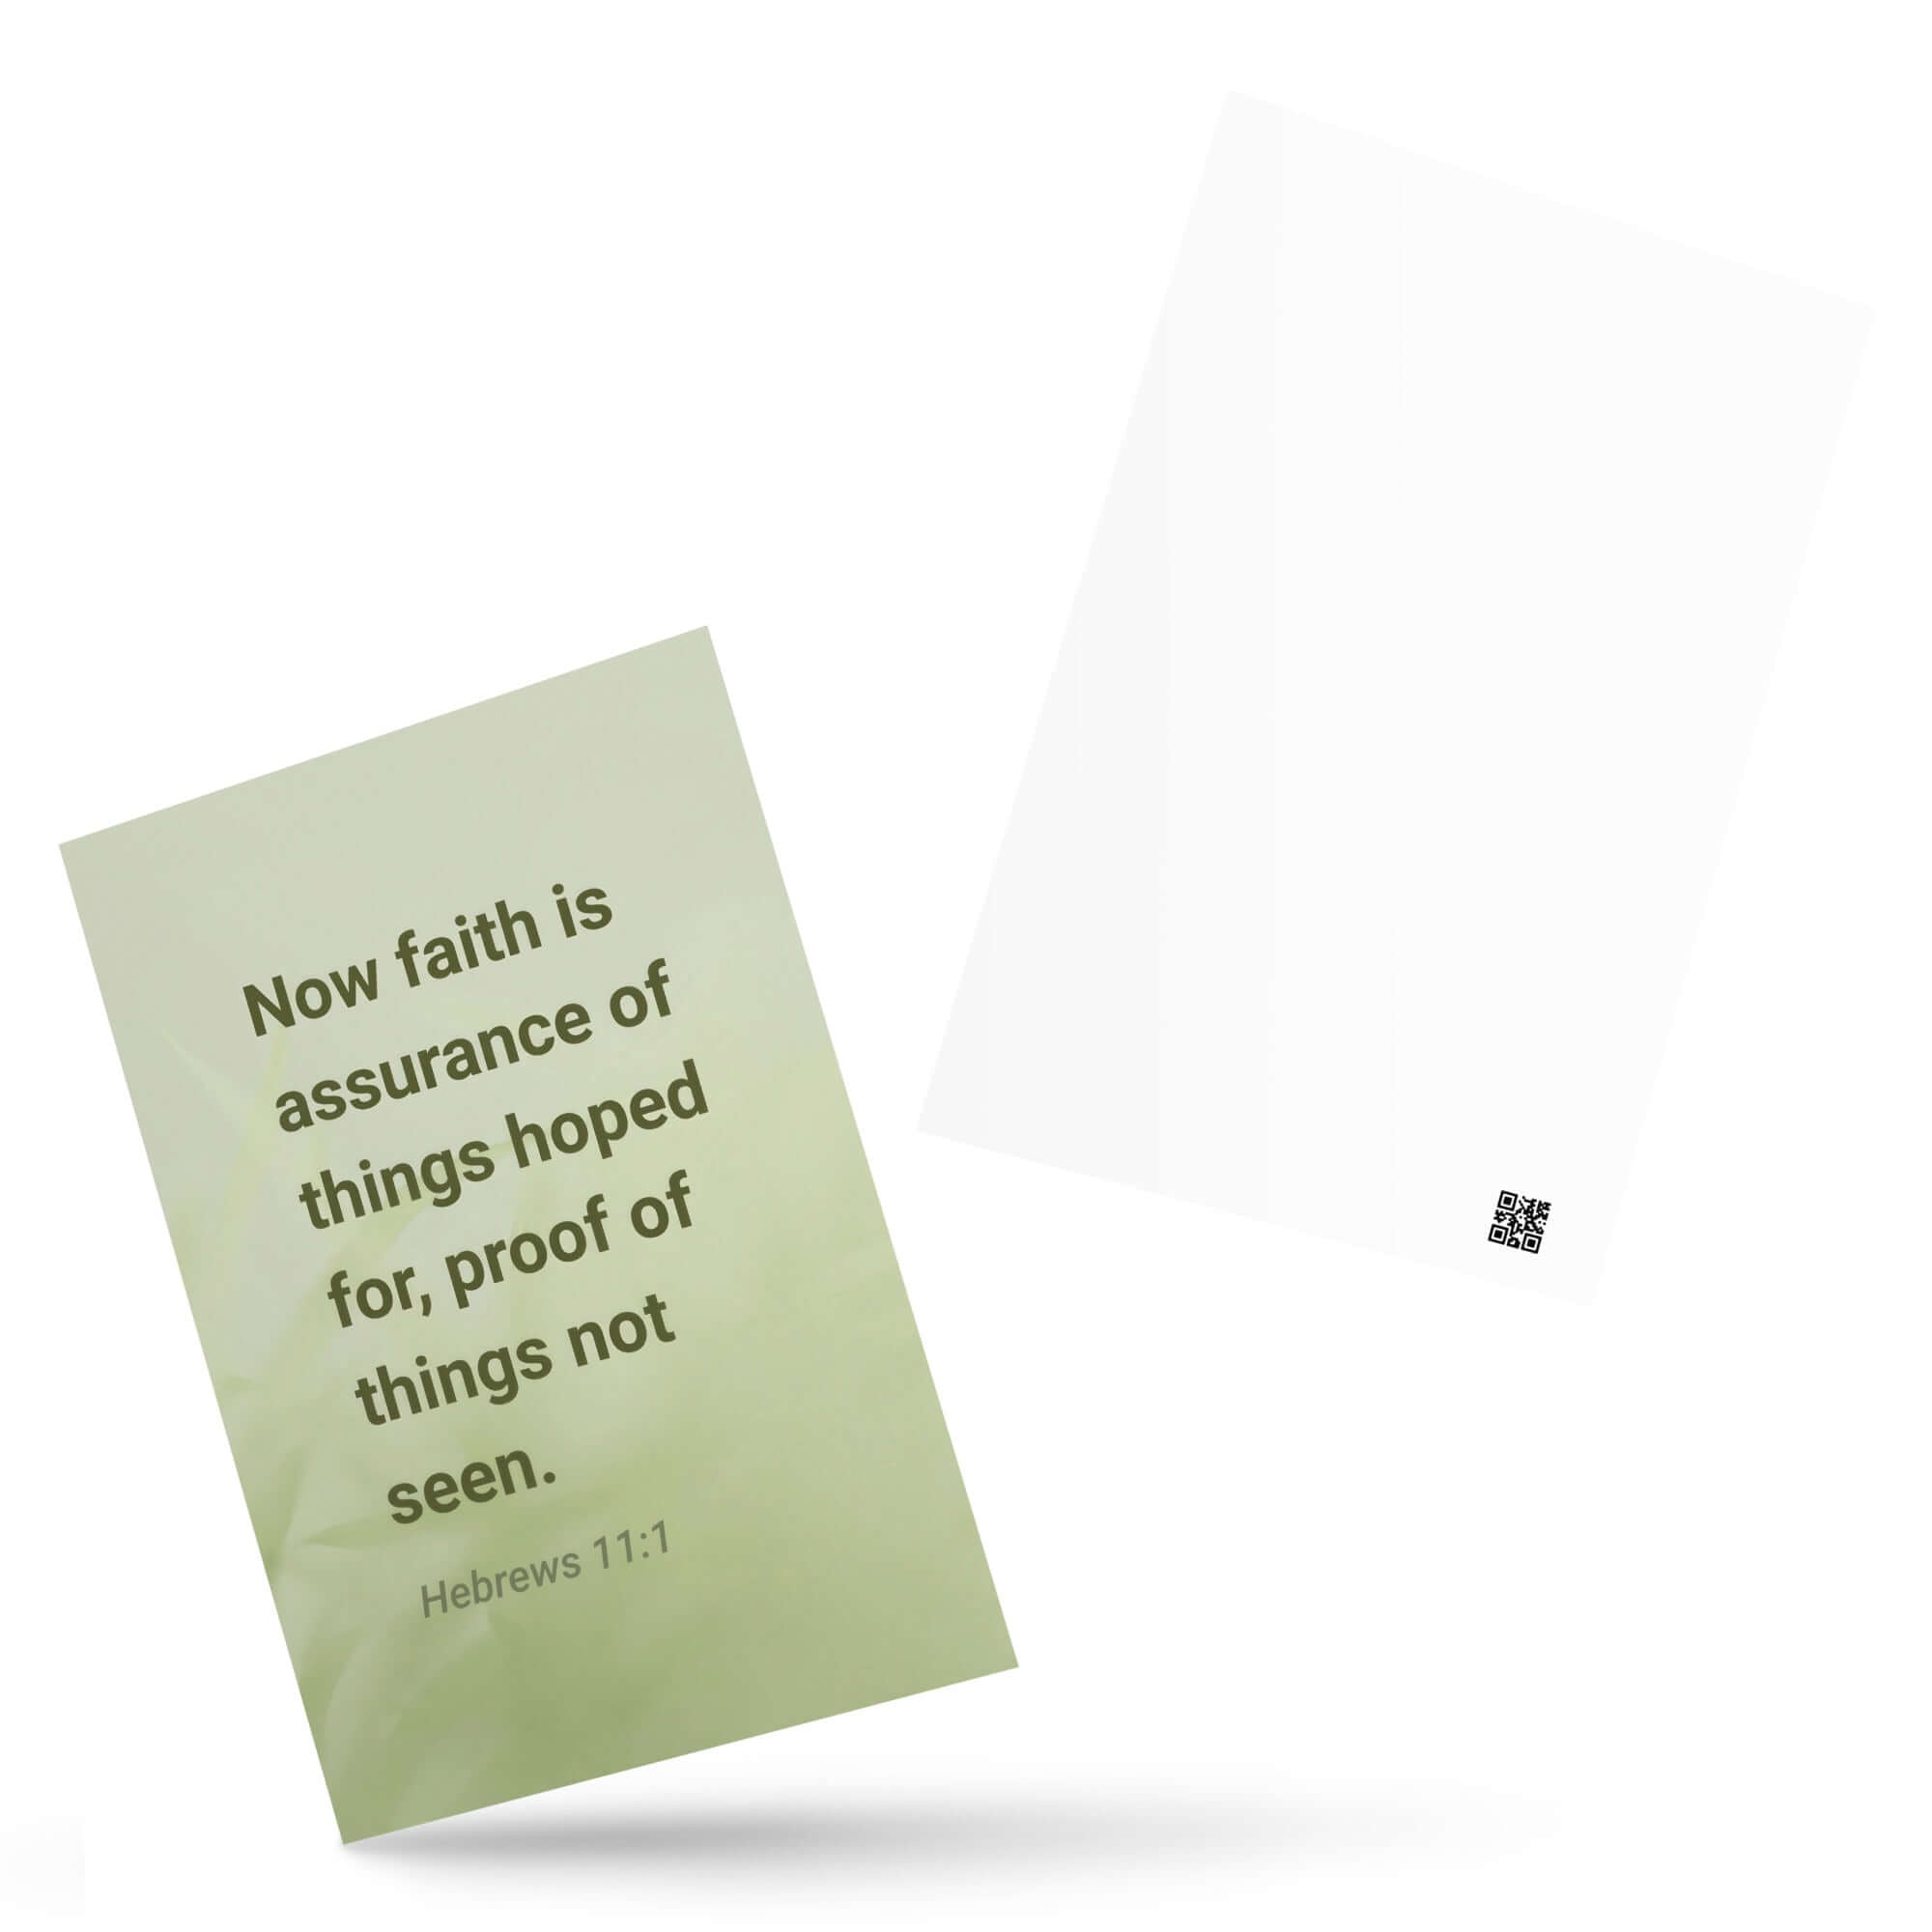 Heb 11:1 - Bible Verse, faith is assurance Standard Postcard